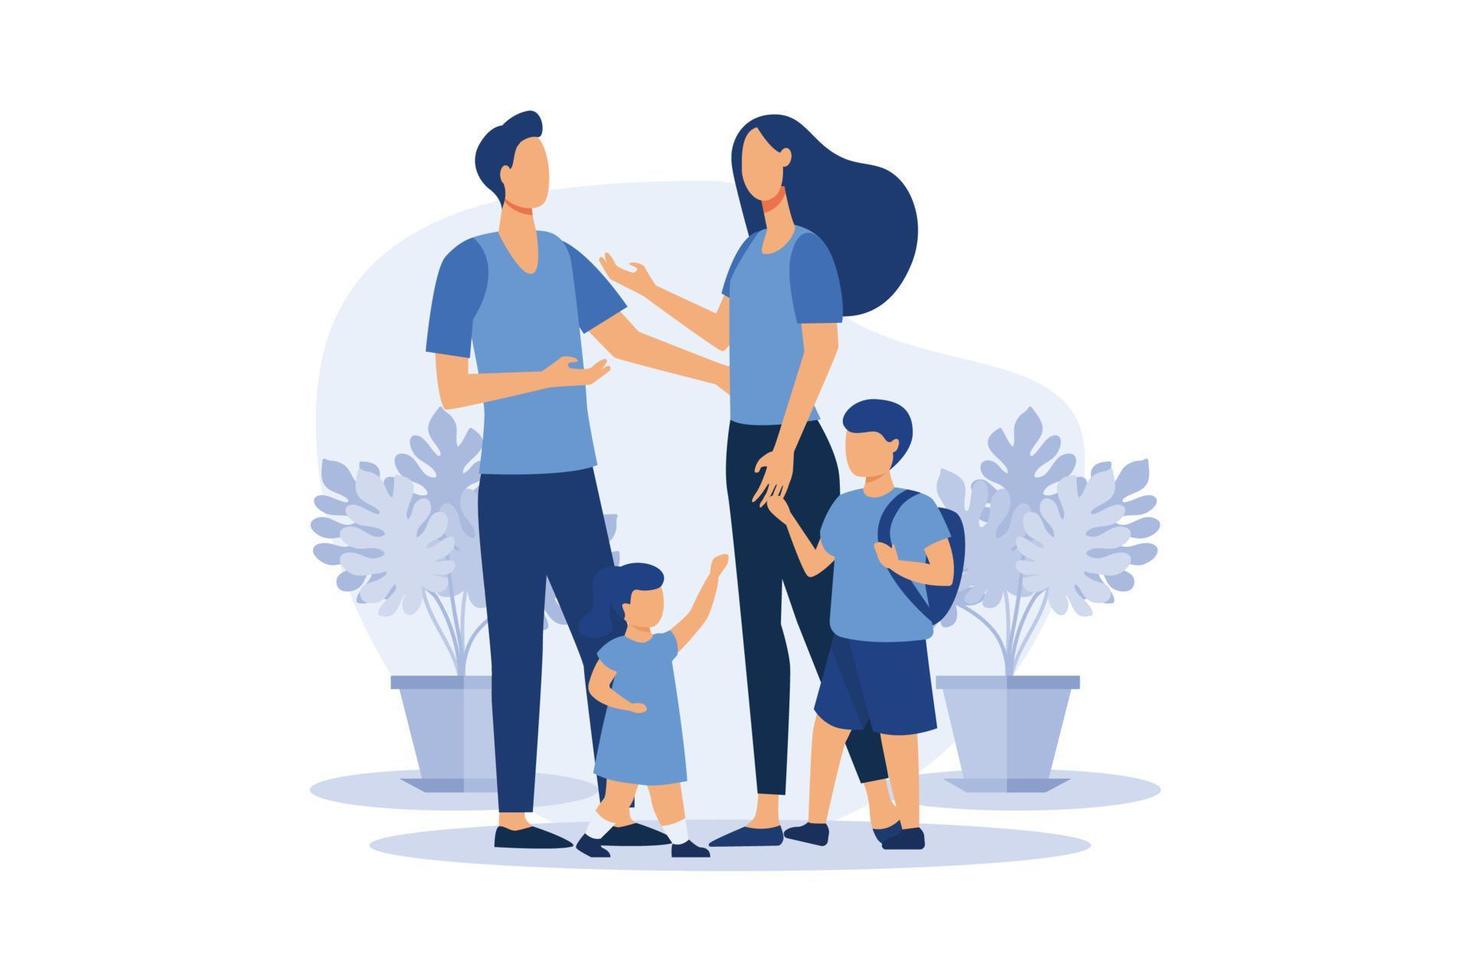 uma família feliz, mãe pai filha filho de mãos dadas e abraçando, família próspera completa ilustração de design plano moderno vetor